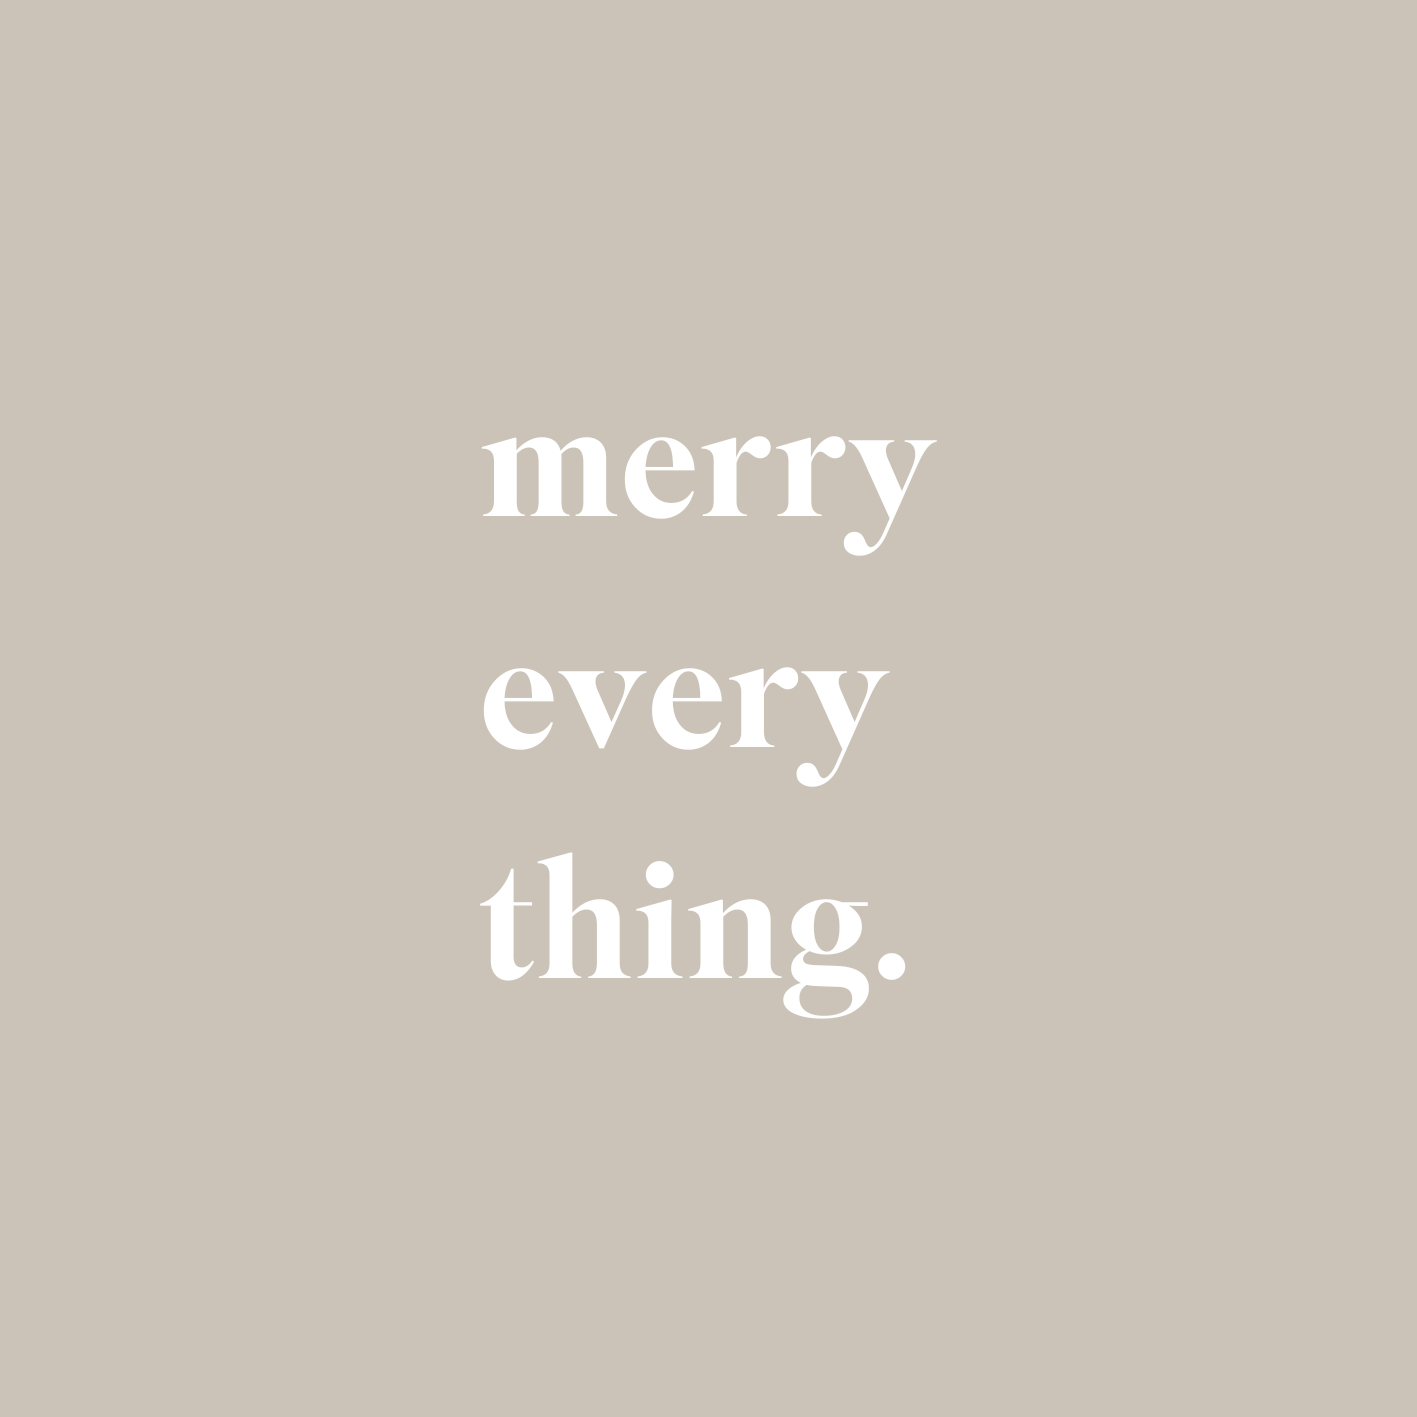 BigLittleGifting's "merry everything" on a beige background.